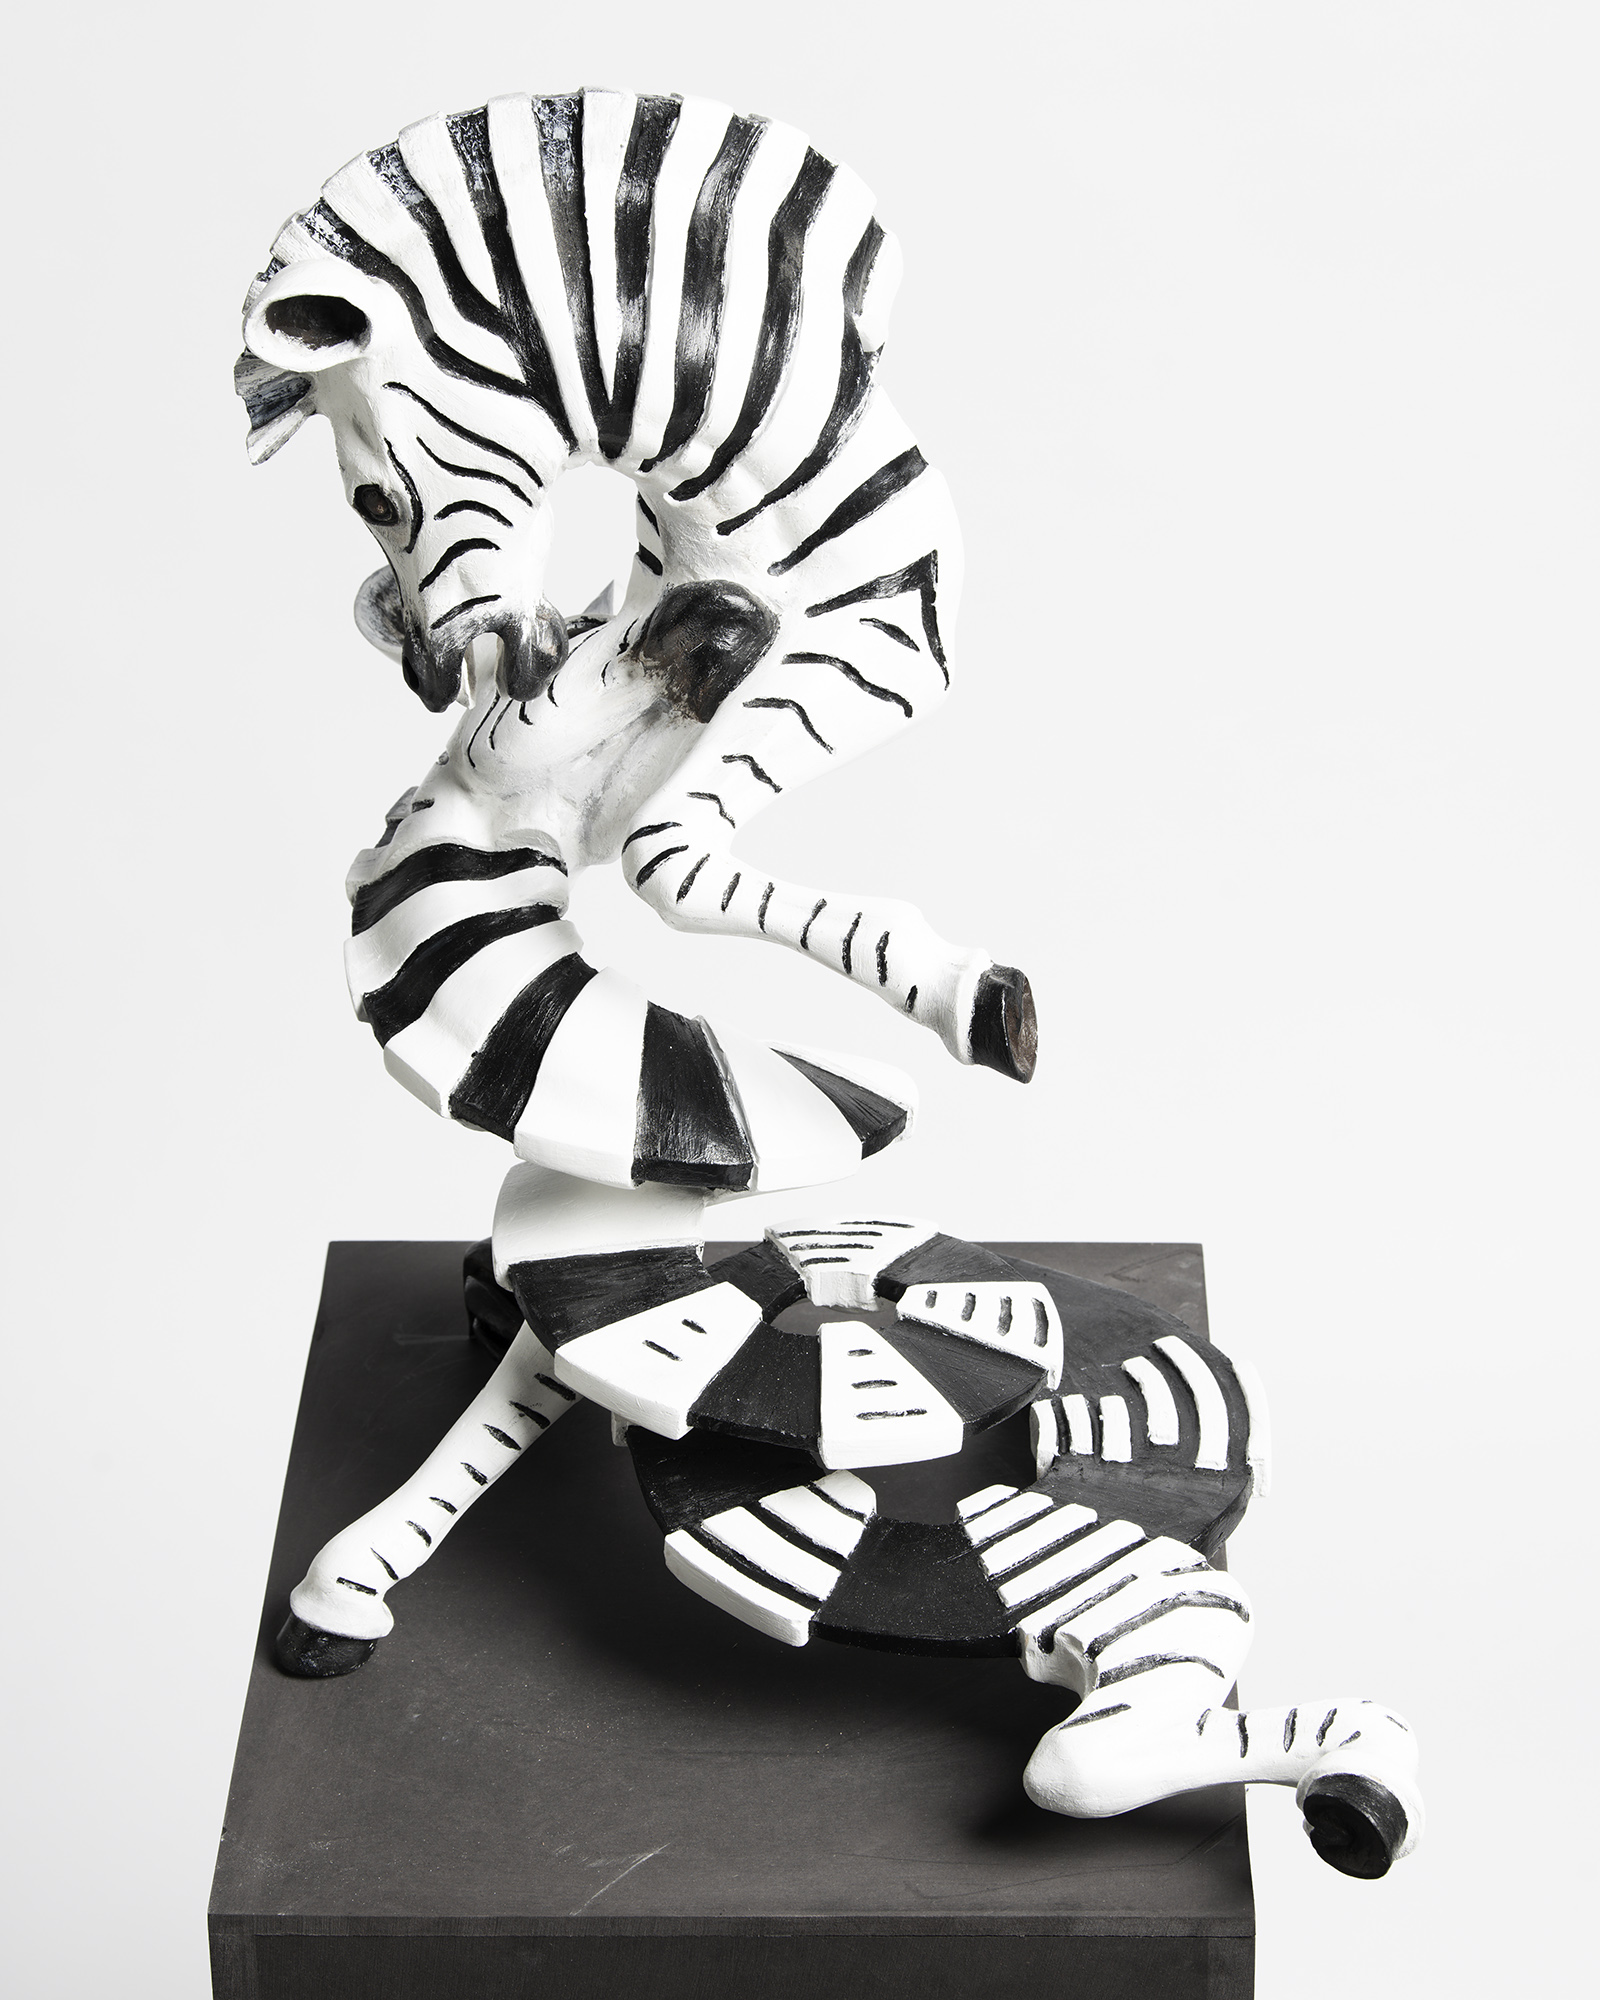 Sculpture of zebra's crossing eachother